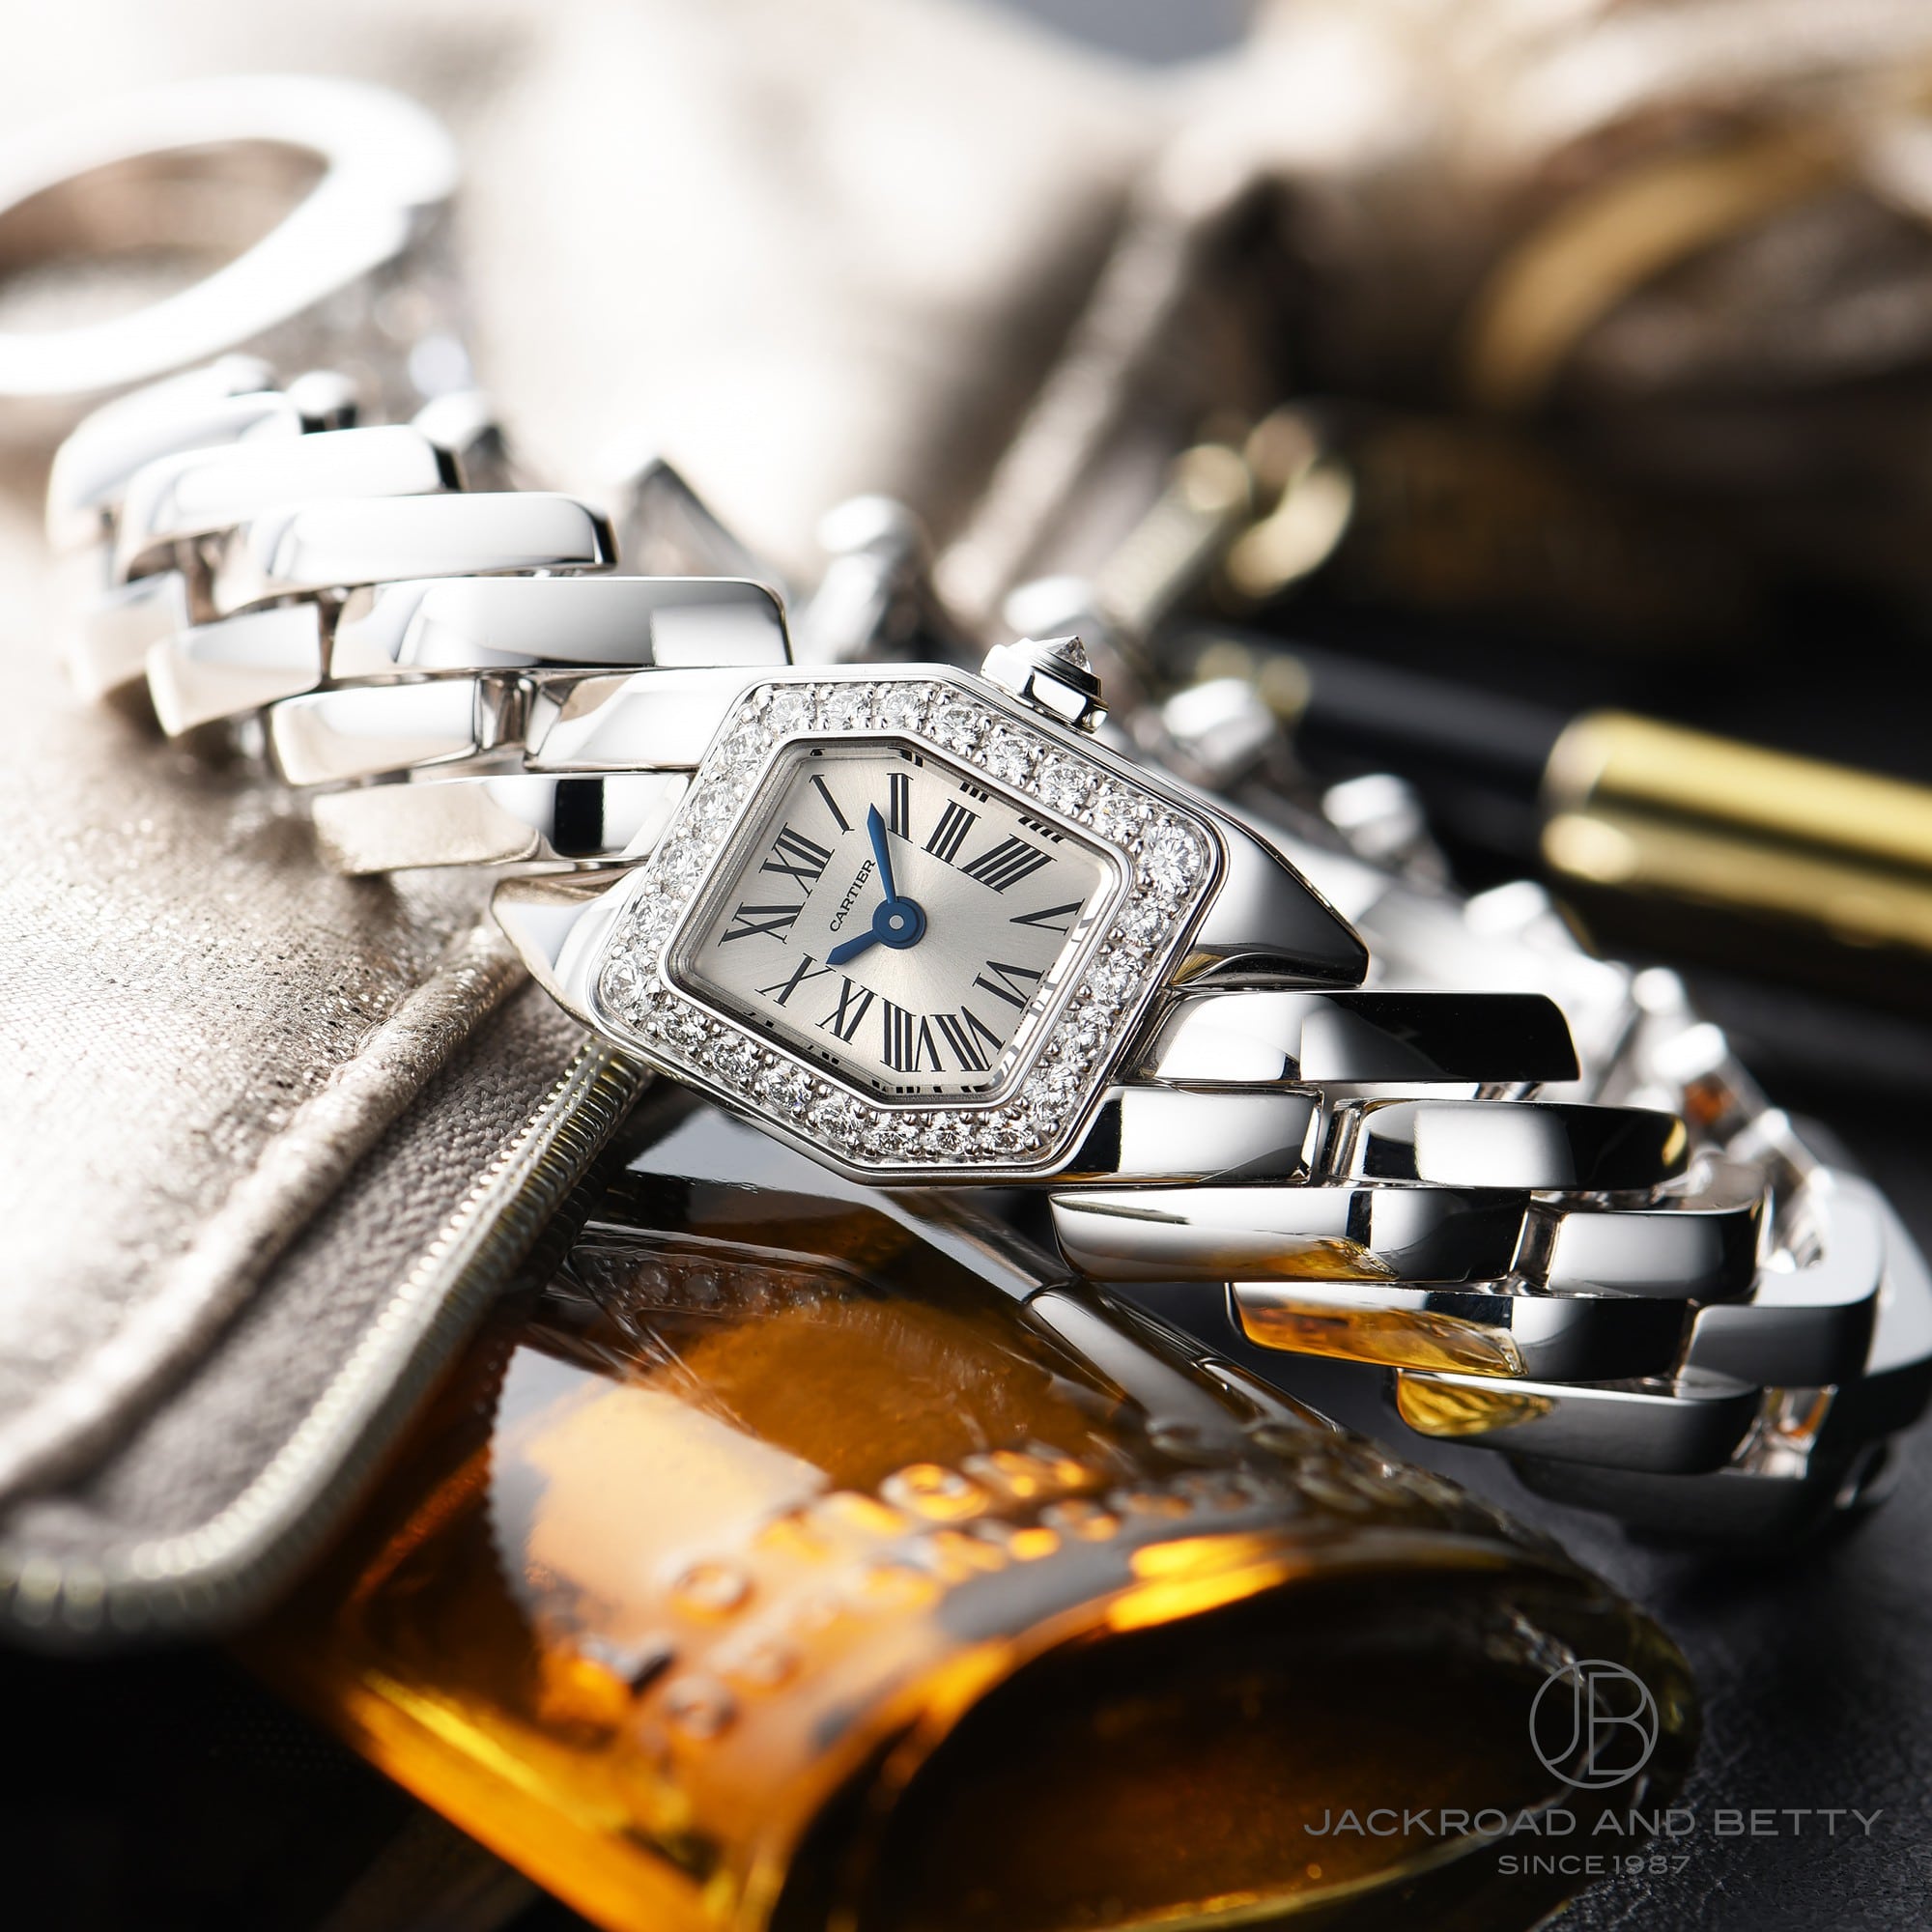 カルティエ 2020年新作 マイヨン ドゥ カルティエ が入荷！カルティエが贈る最新ジュエリーウォッチの詳細をリポートします！ レディース ブランド 腕時計専門店 通販サイト ベティーロード